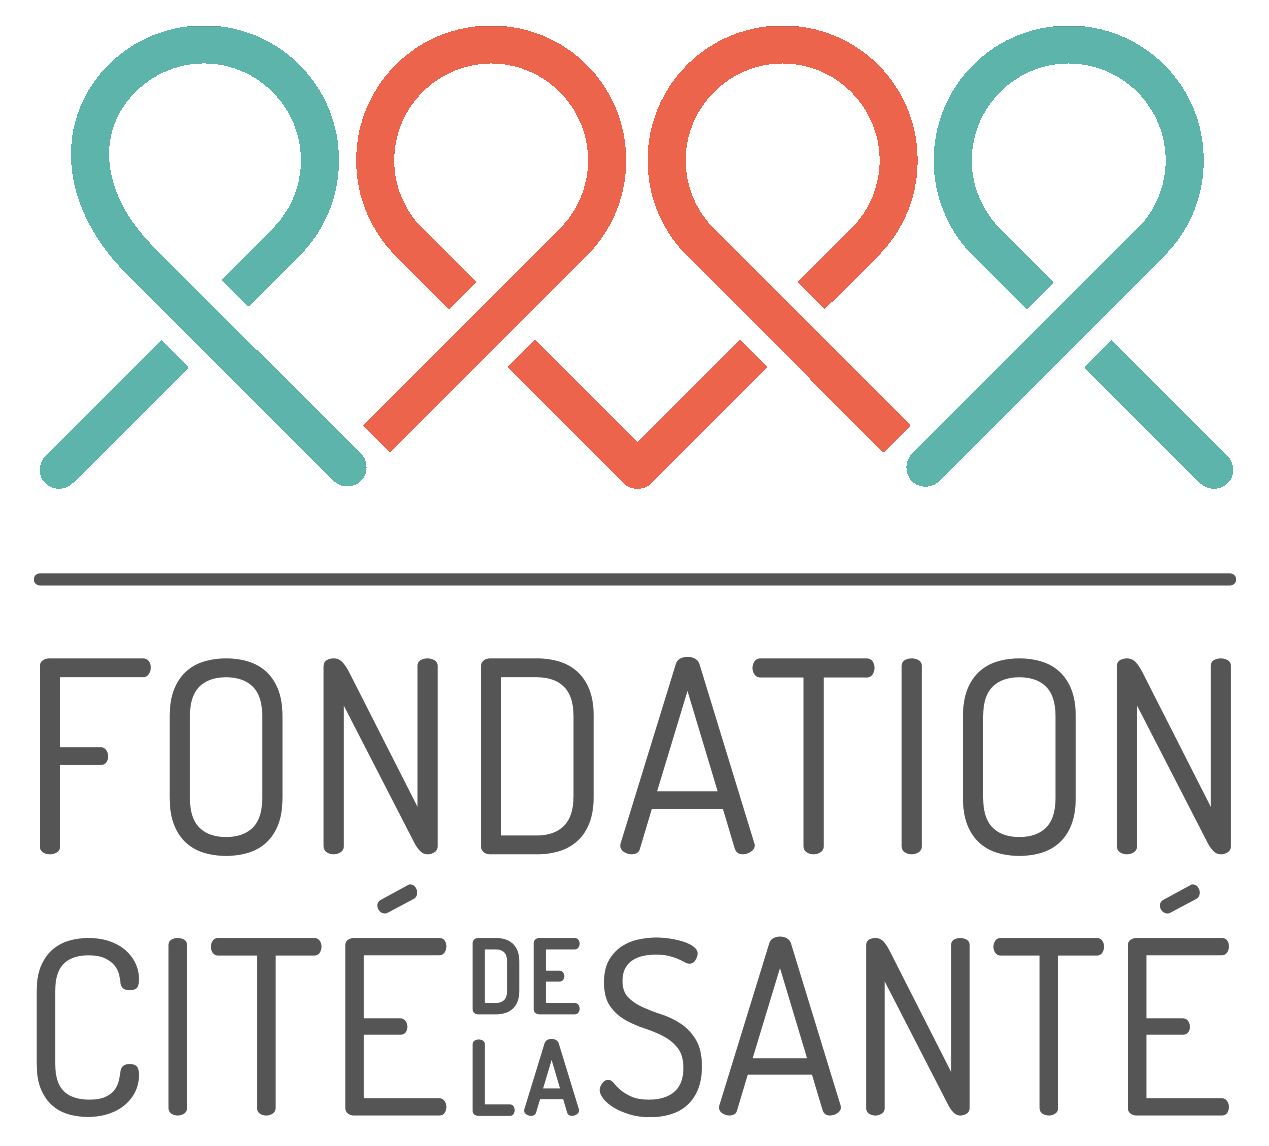 Fondation Cité de la Santé